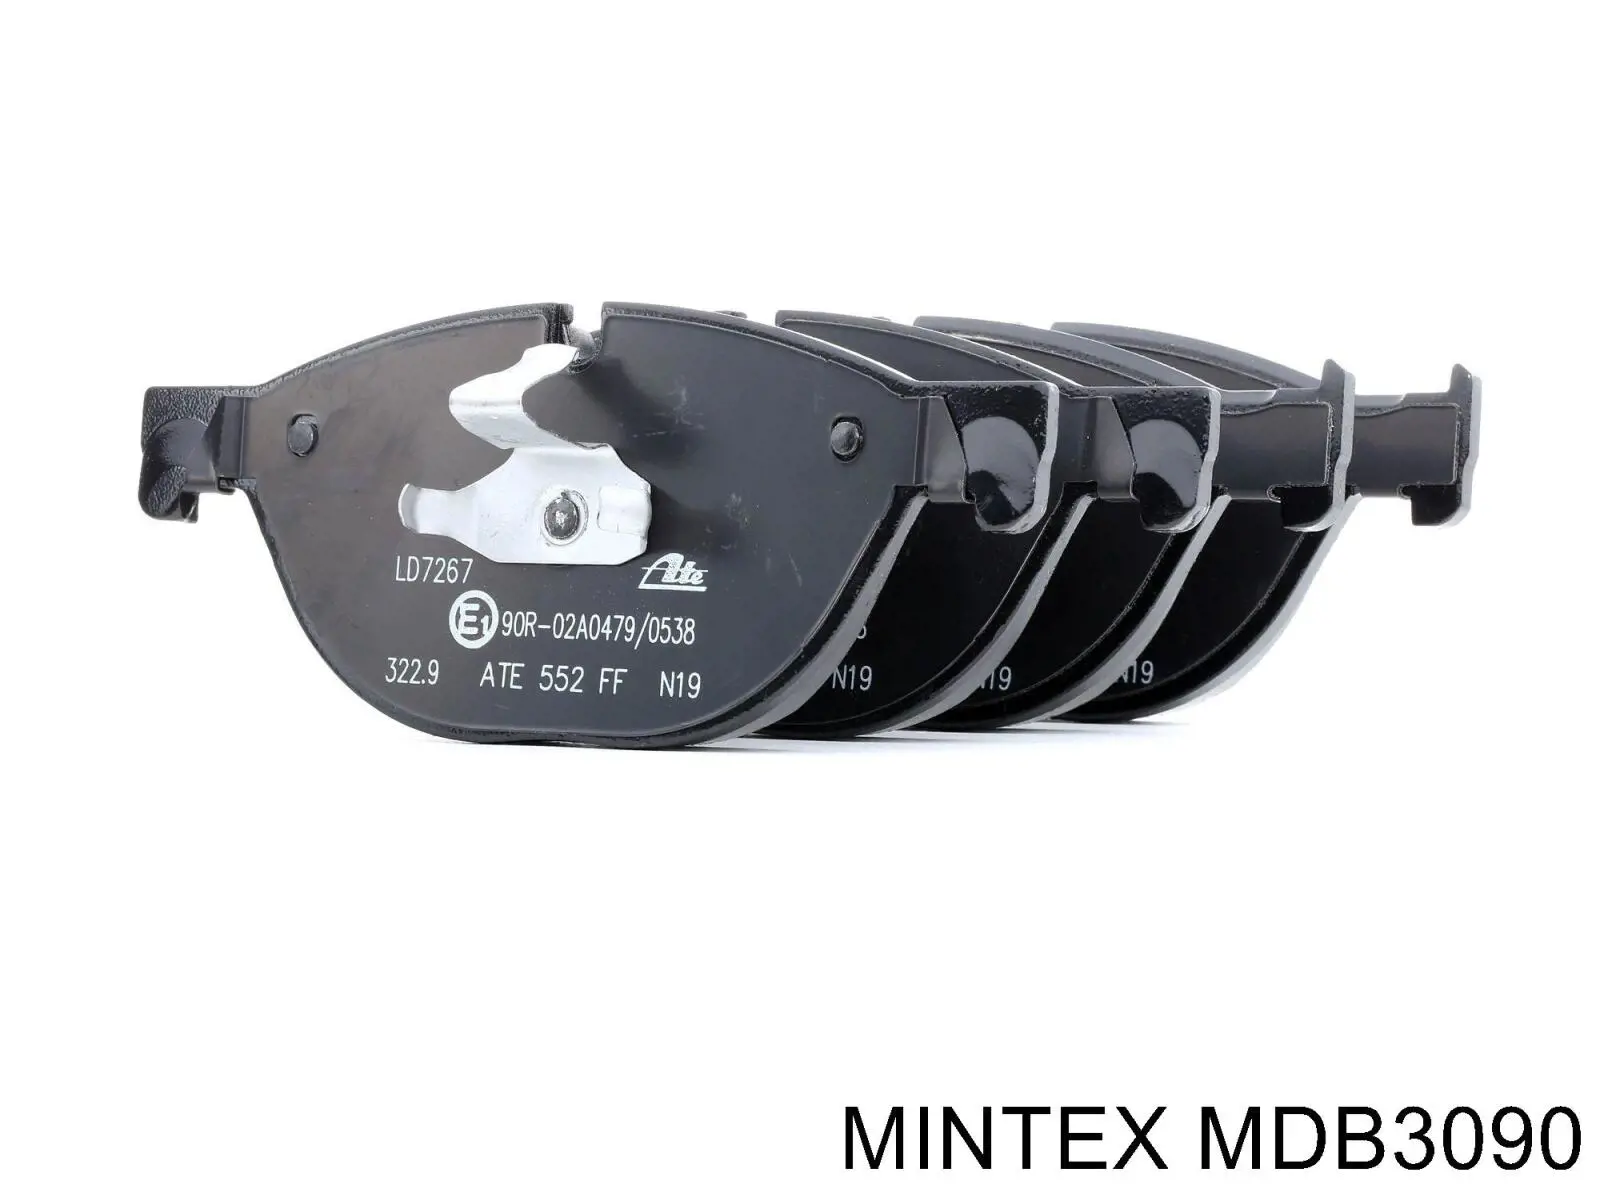 MDB3090 Mintex pastillas de freno delanteras